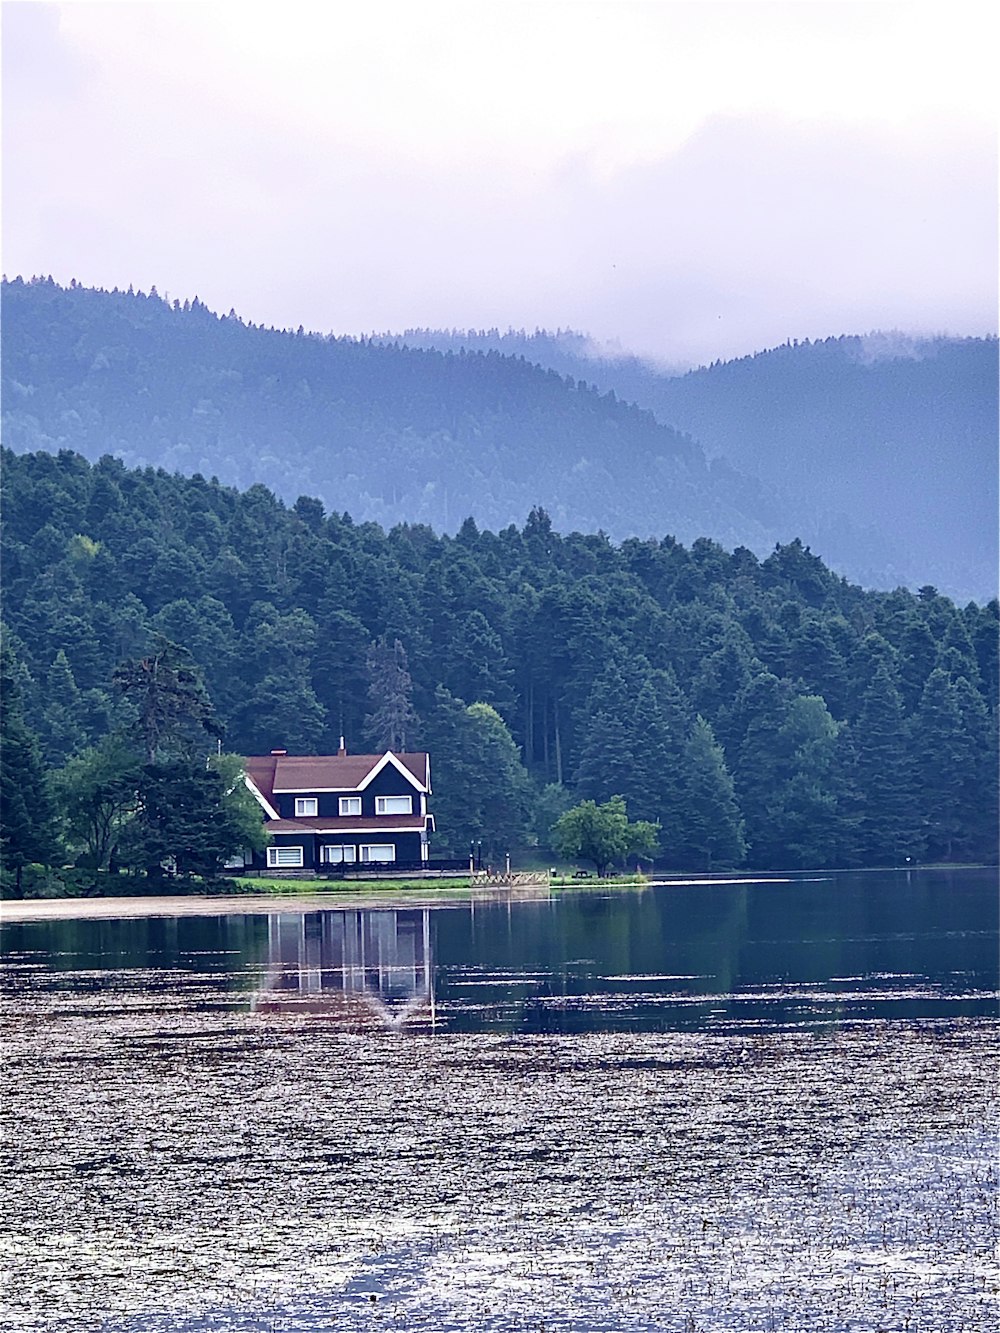 Casa di legno marrone sul lago vicino alle montagne verdi durante il giorno